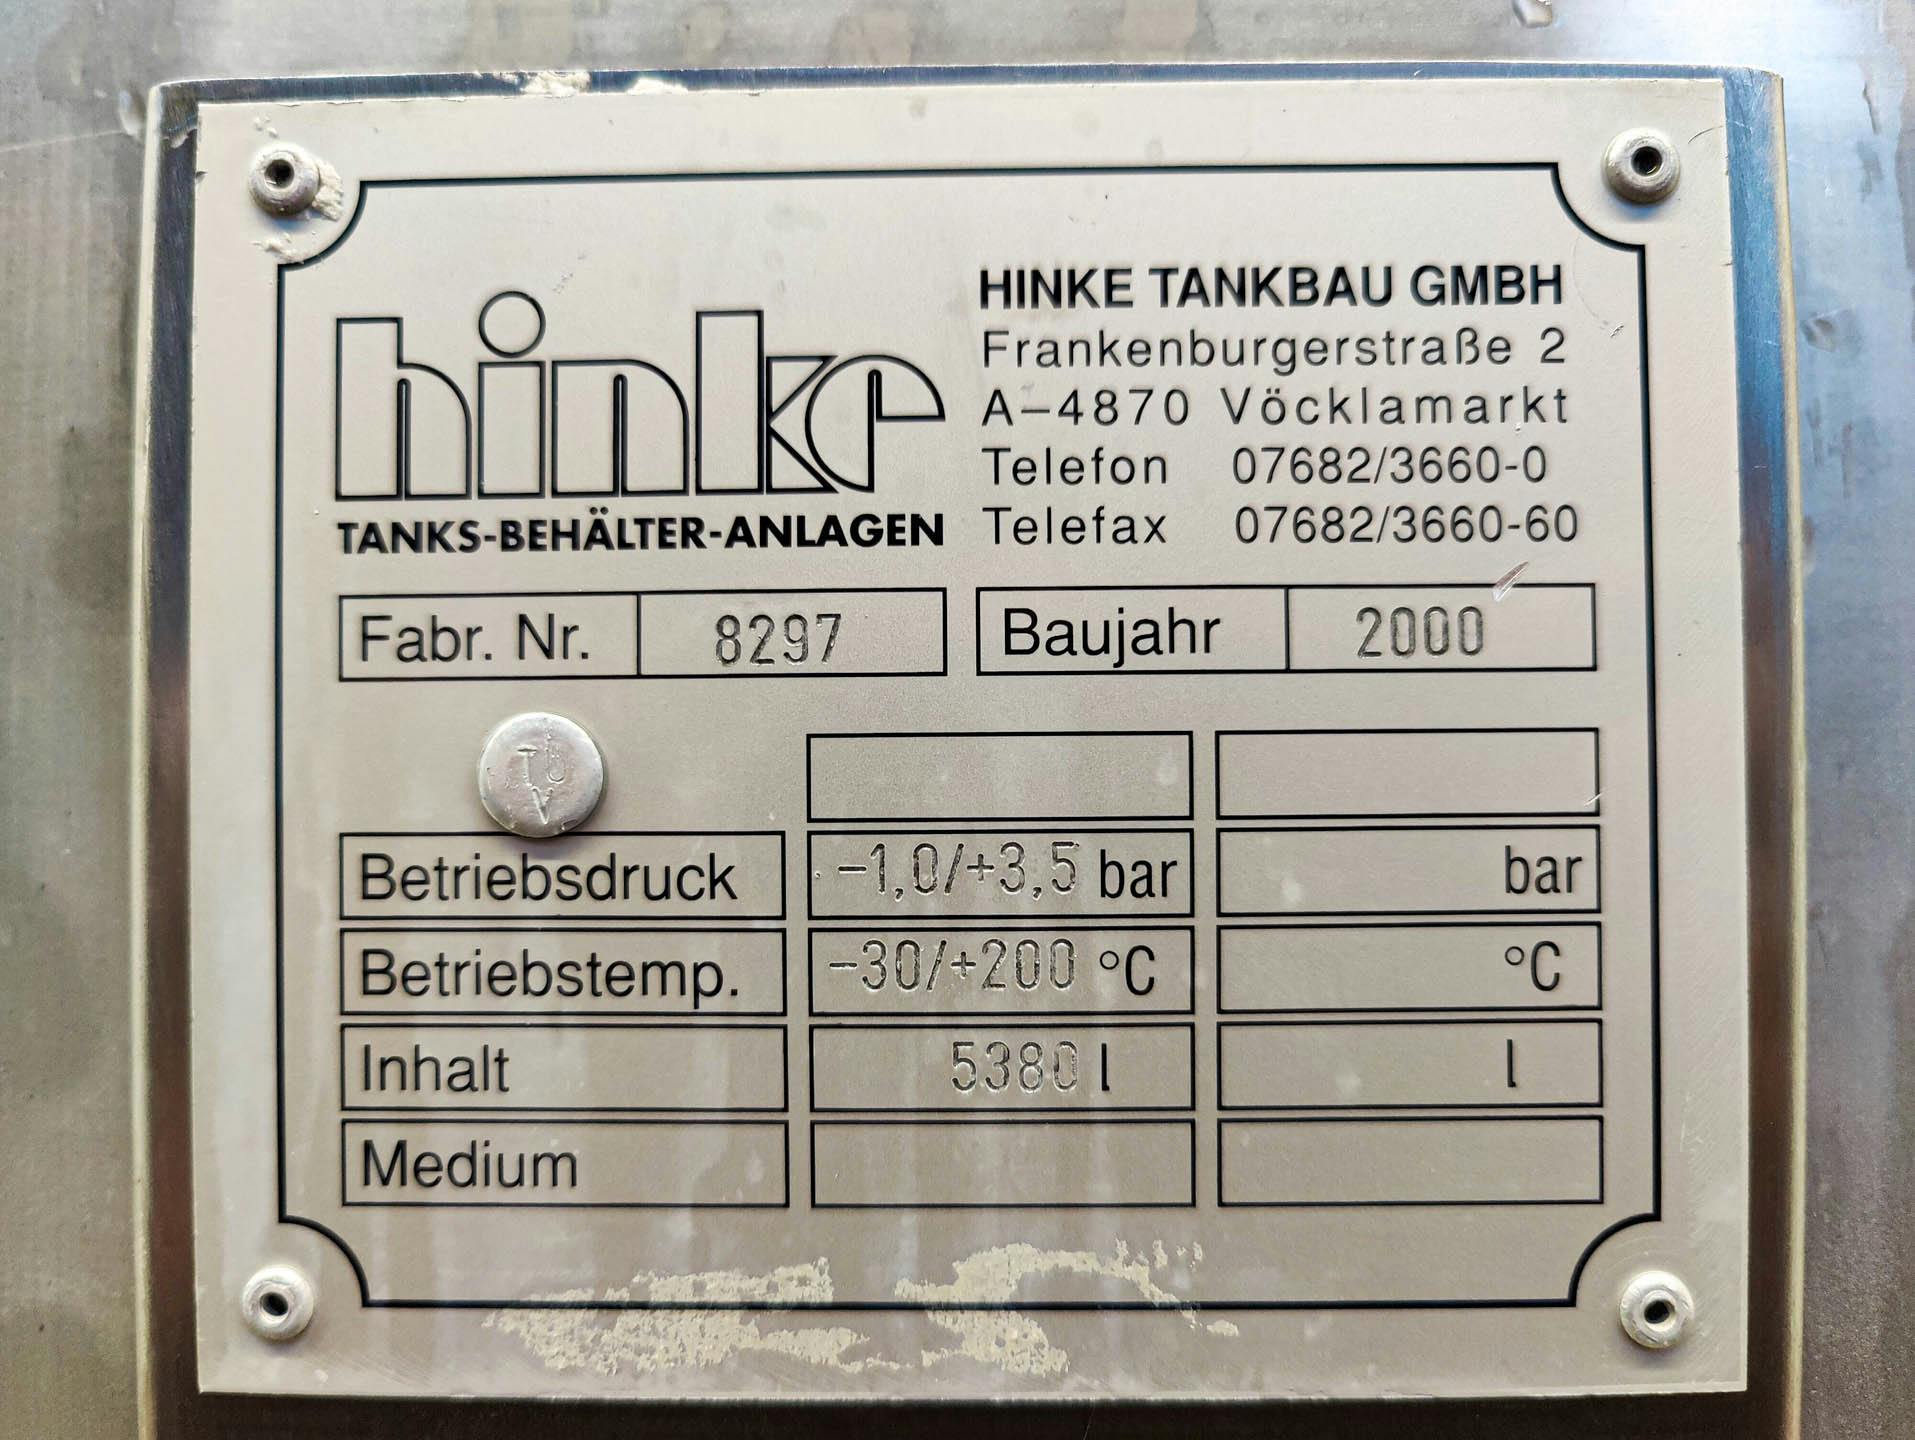 Hinke 5380 Ltr. - Drukketel - image 8